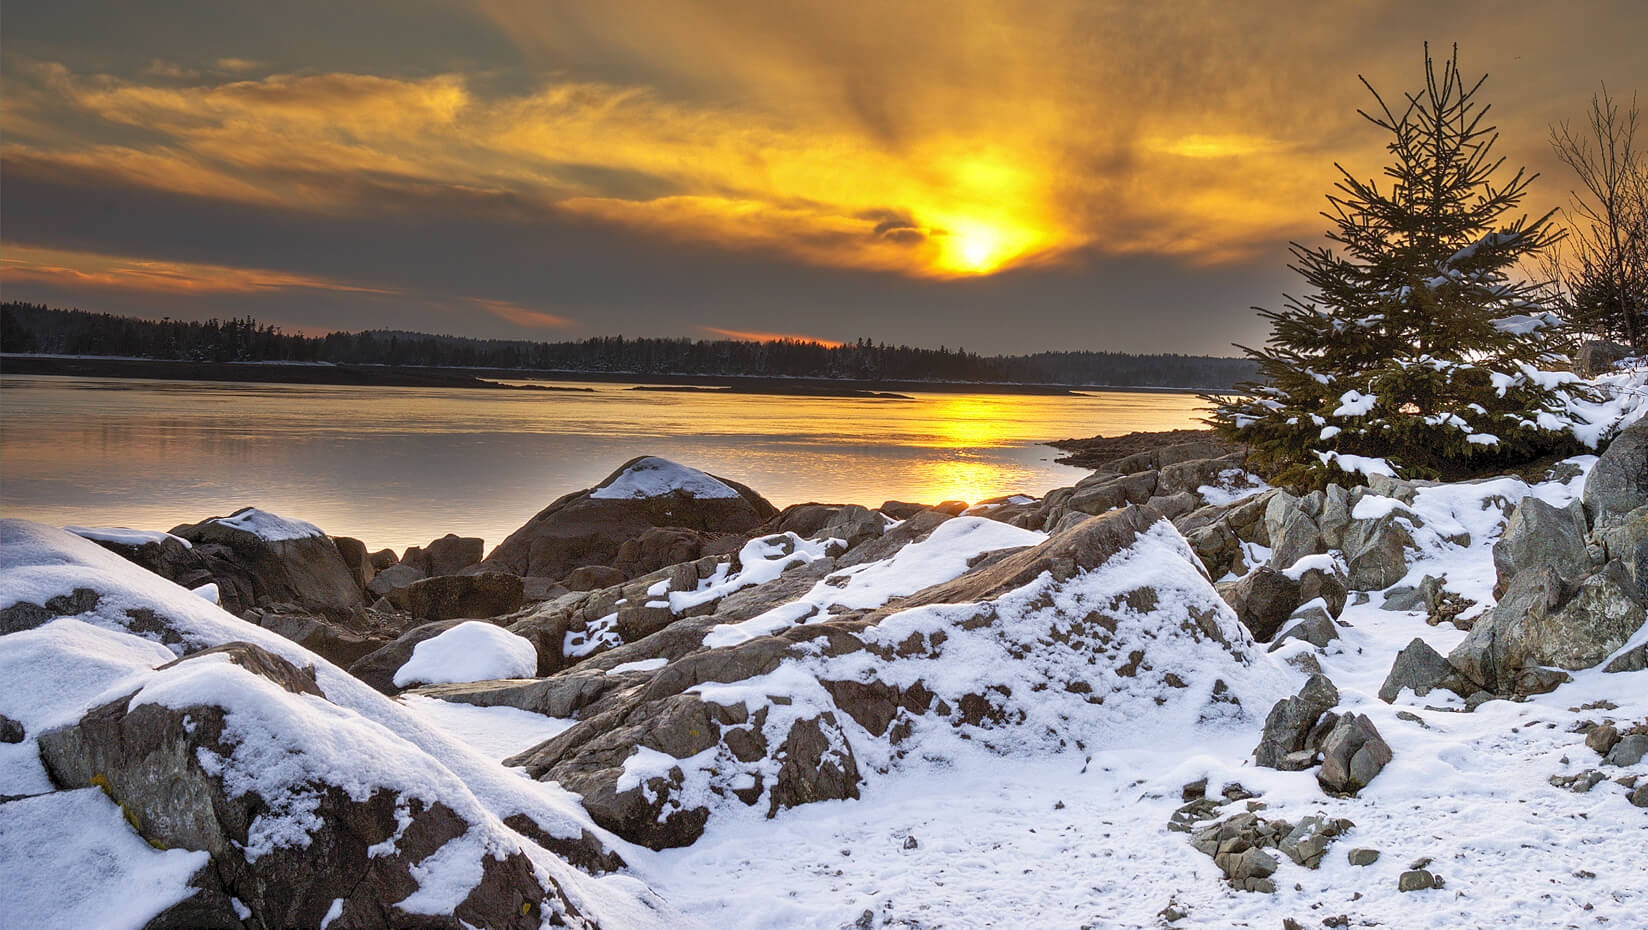 Sunset over a the snowy Maine coast.